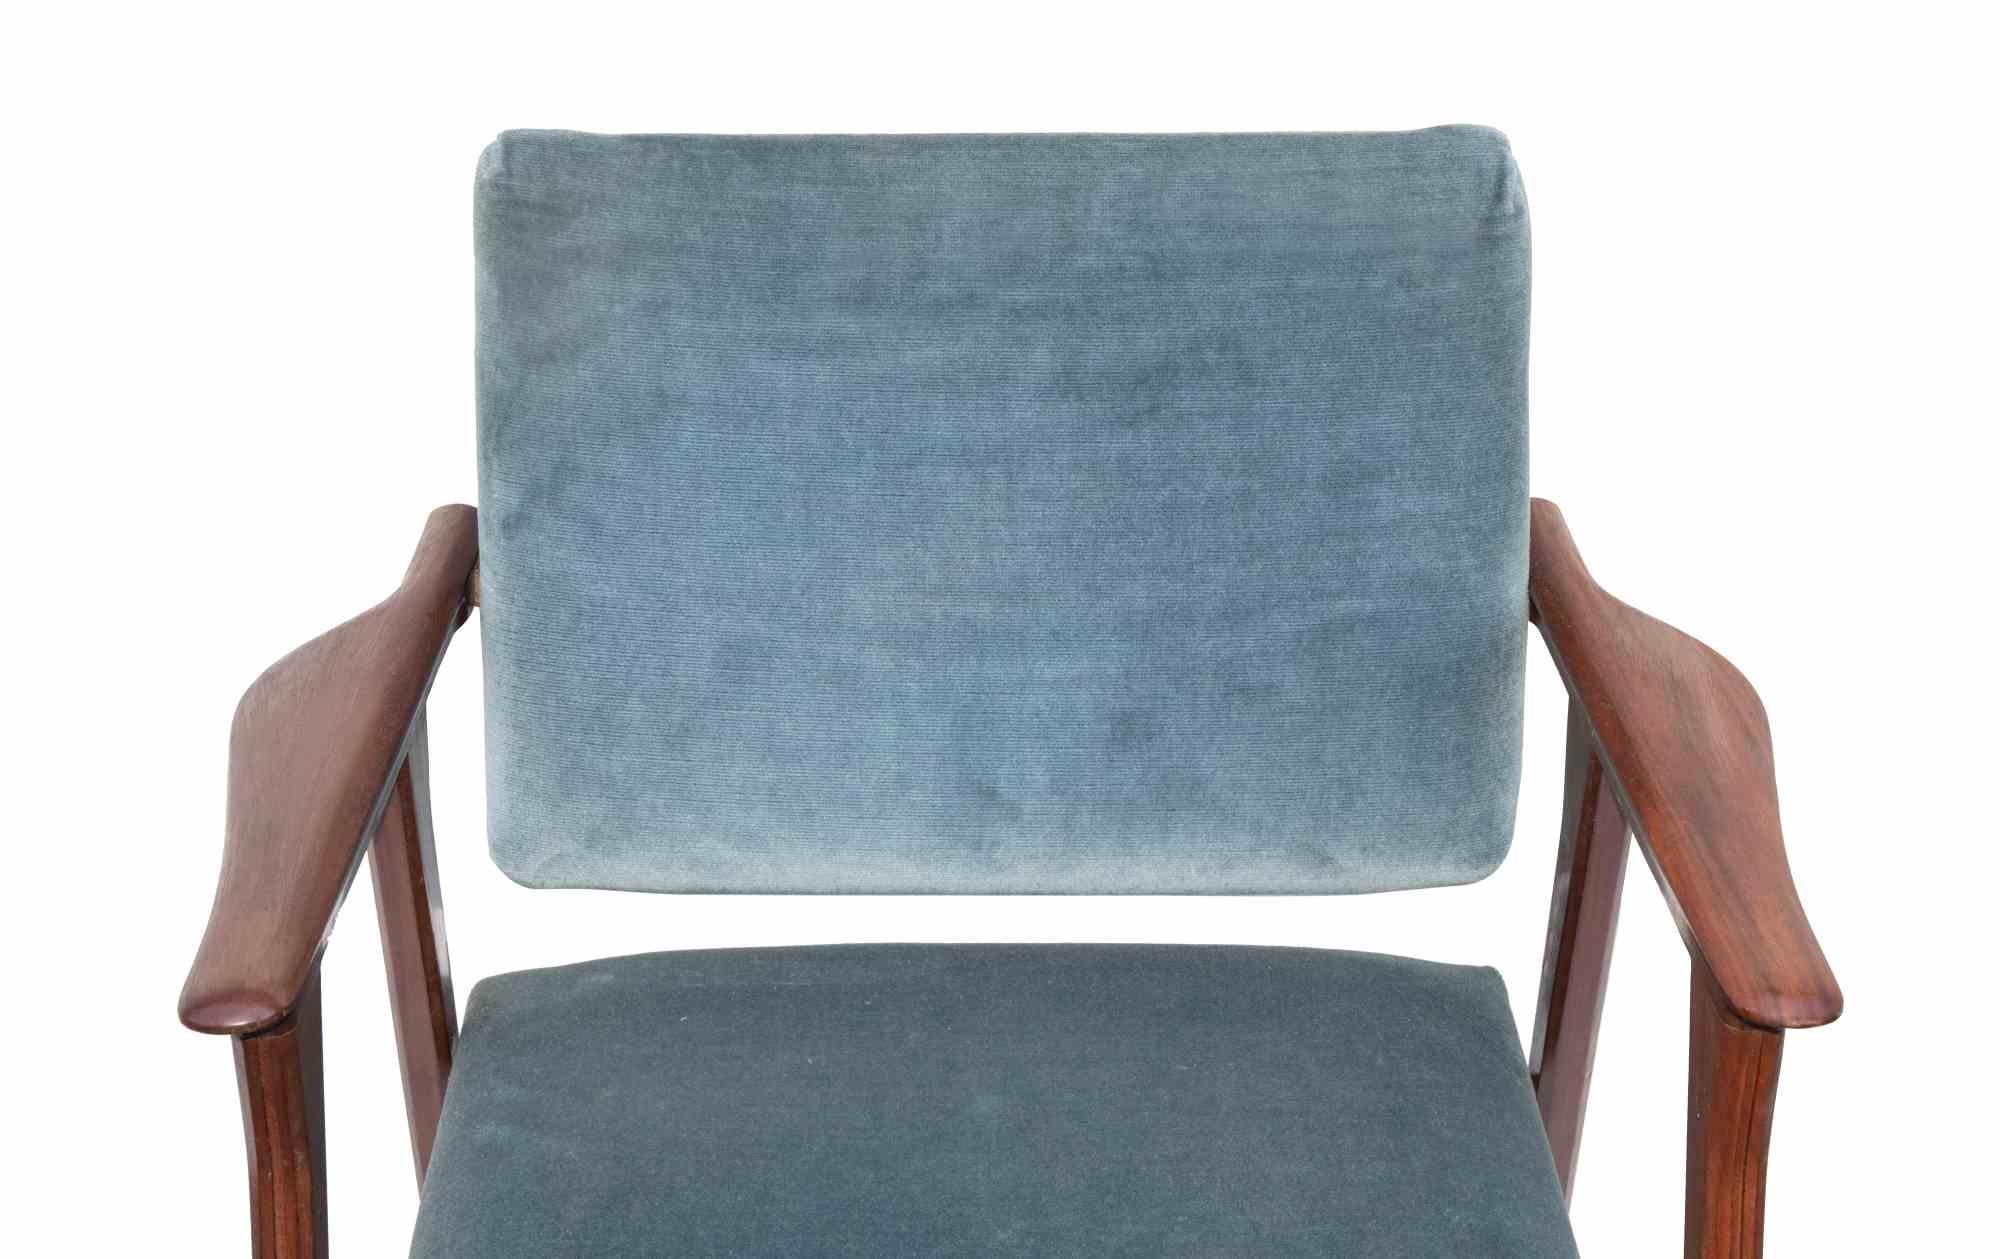 La paire de chaises en bois de rose est un mobilier design original réalisé dans les années 1950.

Fauteuils en velours d'origine. 

Dans le style du modèle Luisa de Franco Albini pour Cassina.

Collectionnez une paire de chaises vintage